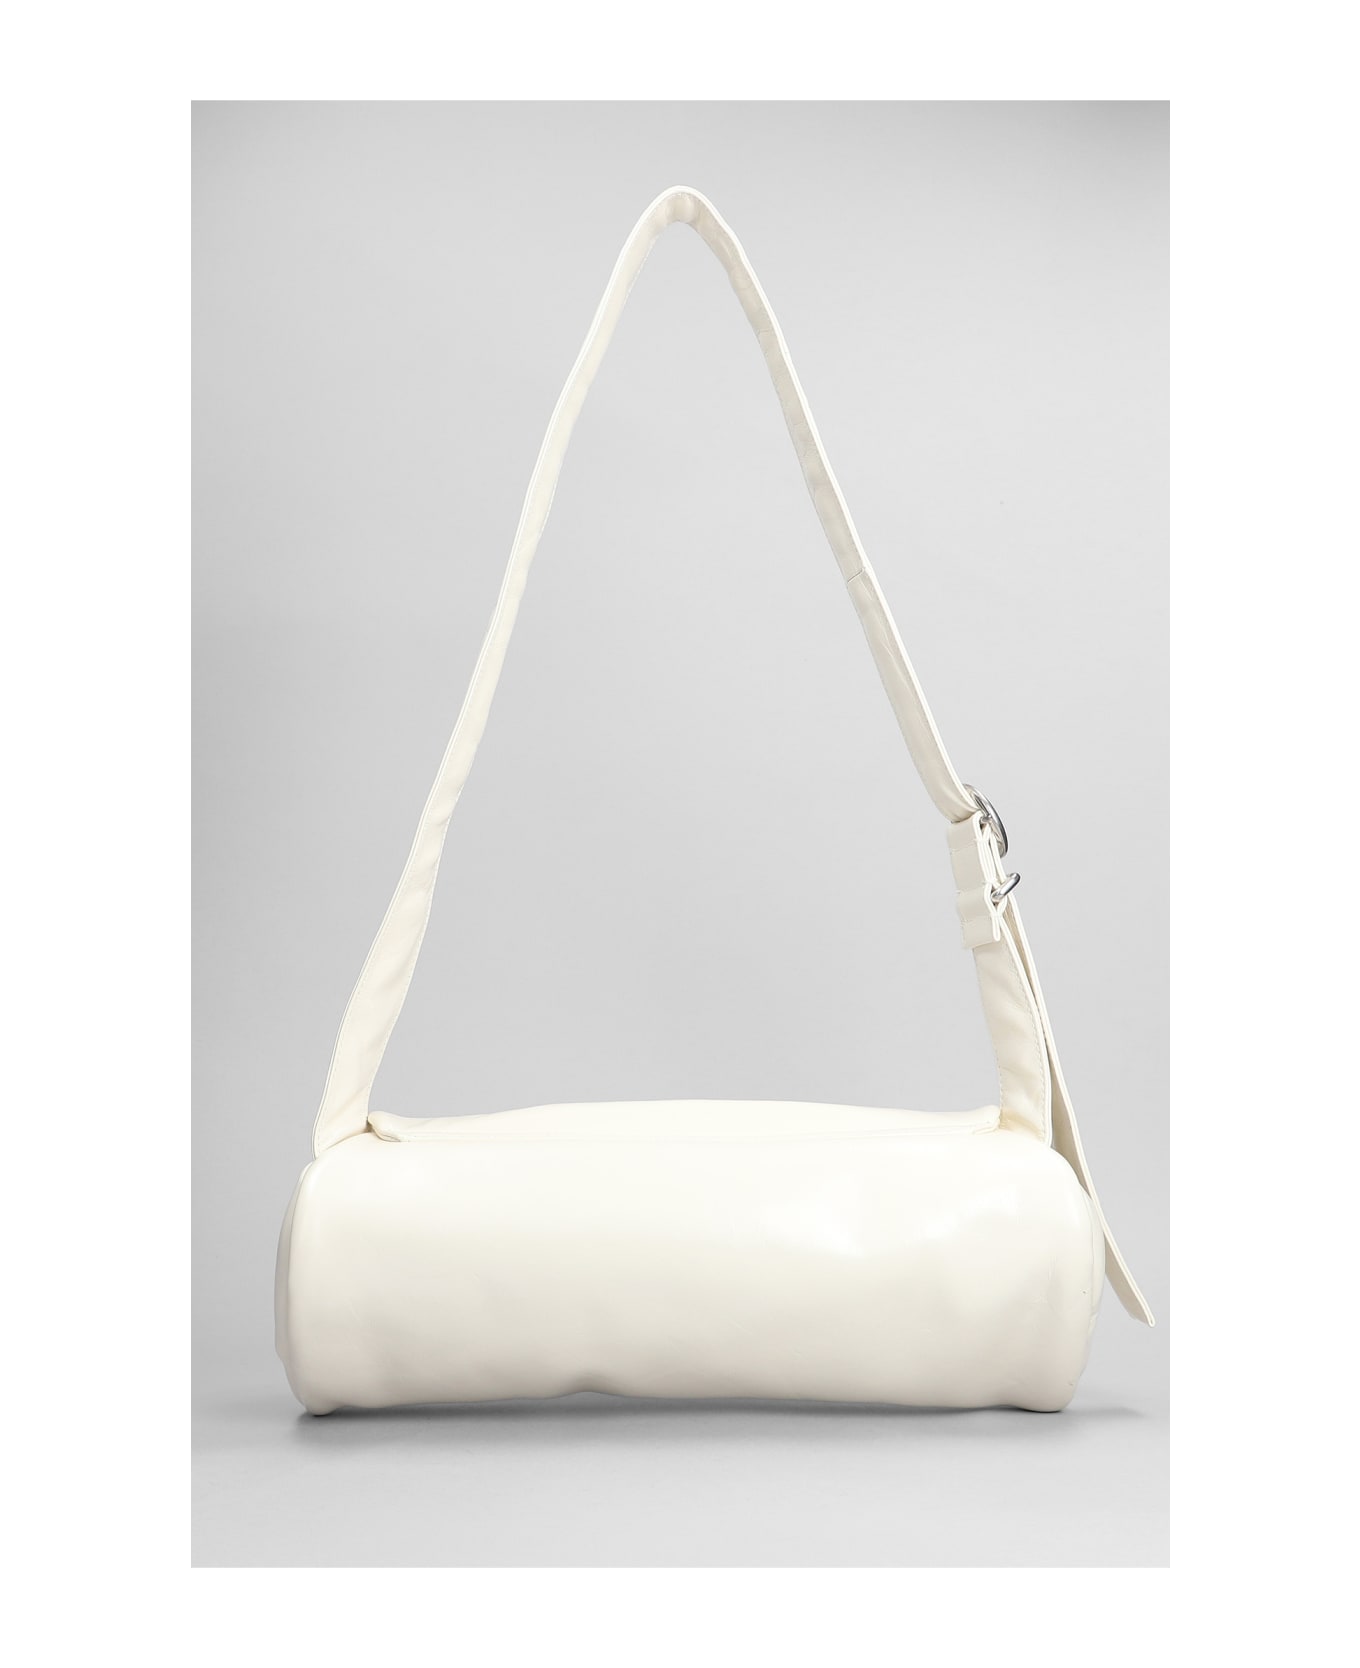 Jil Sander Cannolo Grande Shoulder Bag In White Leather - Eggshell